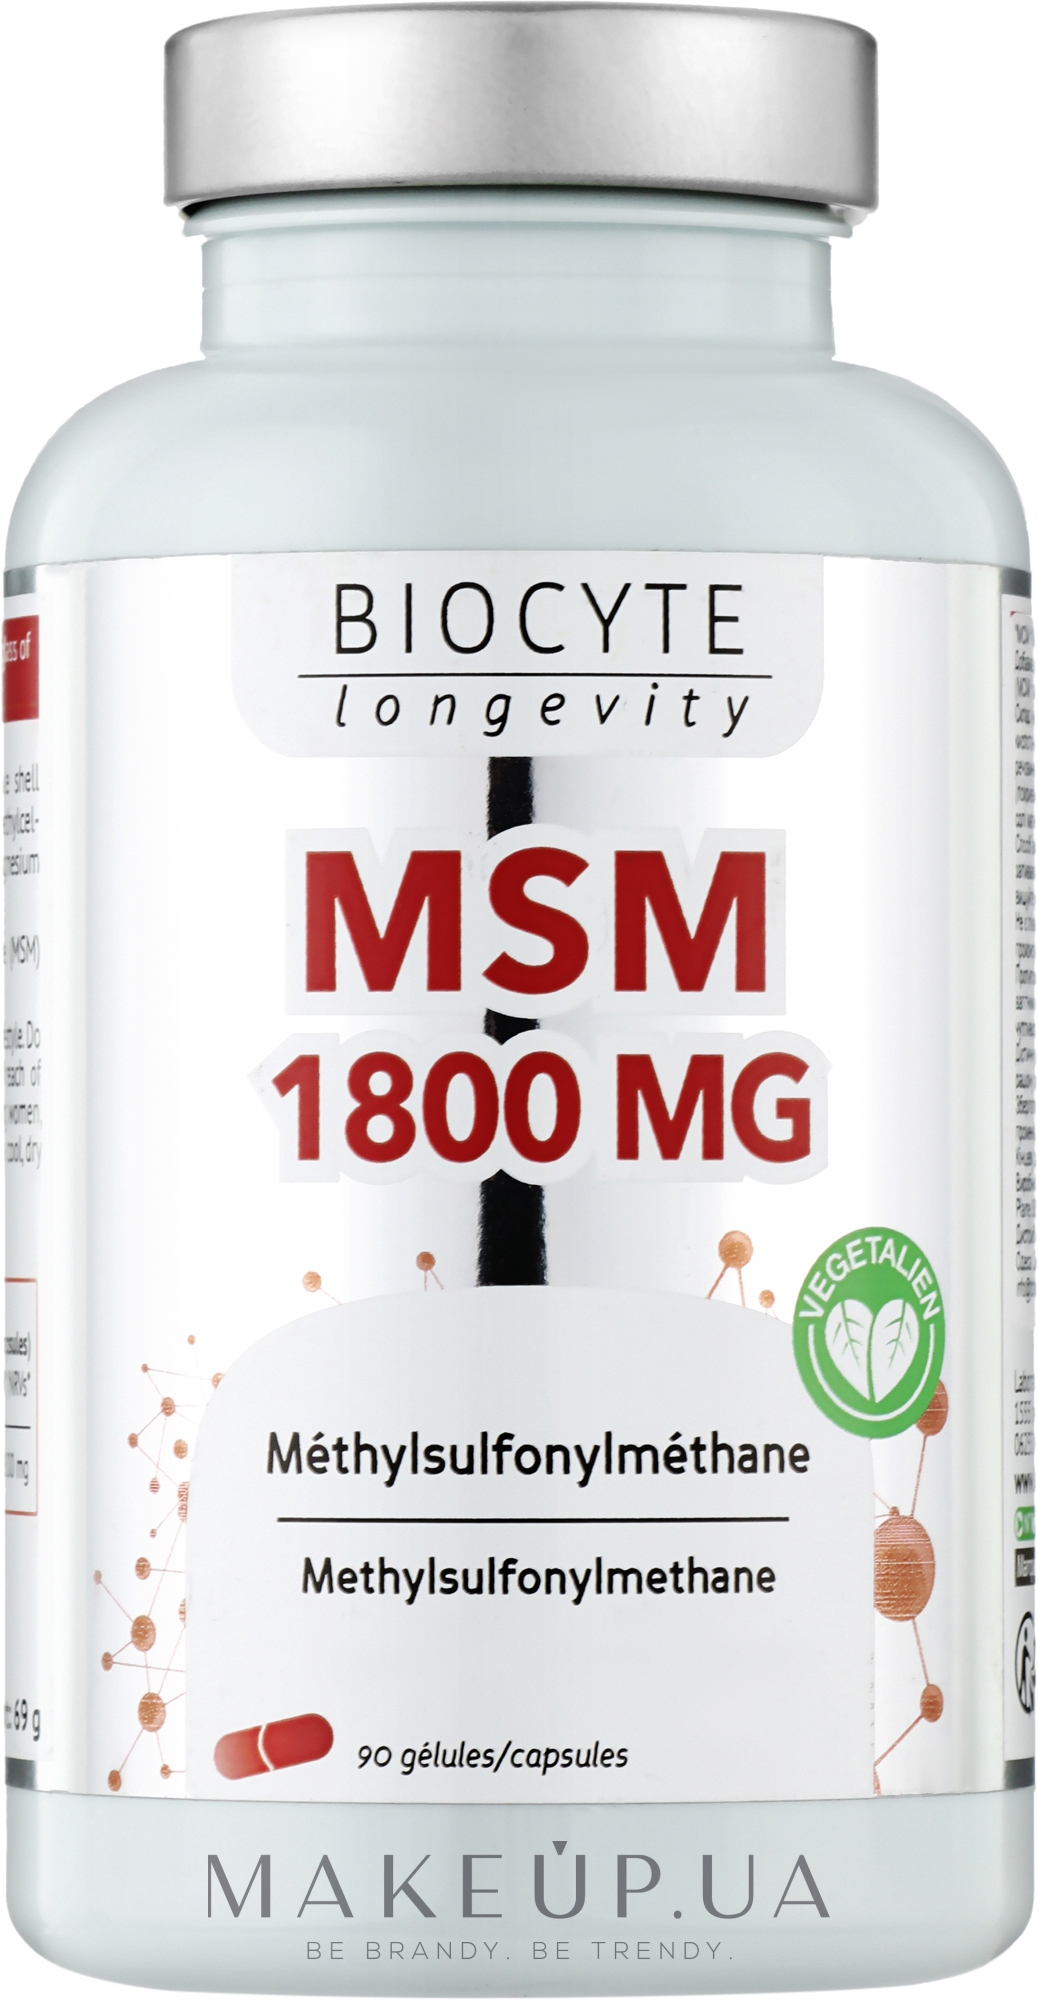 Biocytе МСМ & Вітамін C: Проти запалень та хвороб таких як коліт, артрит, хвороба Крона, васкуліт, нефрит (90 капсул) - Biocyte MSM 1800 mg — фото 90шт